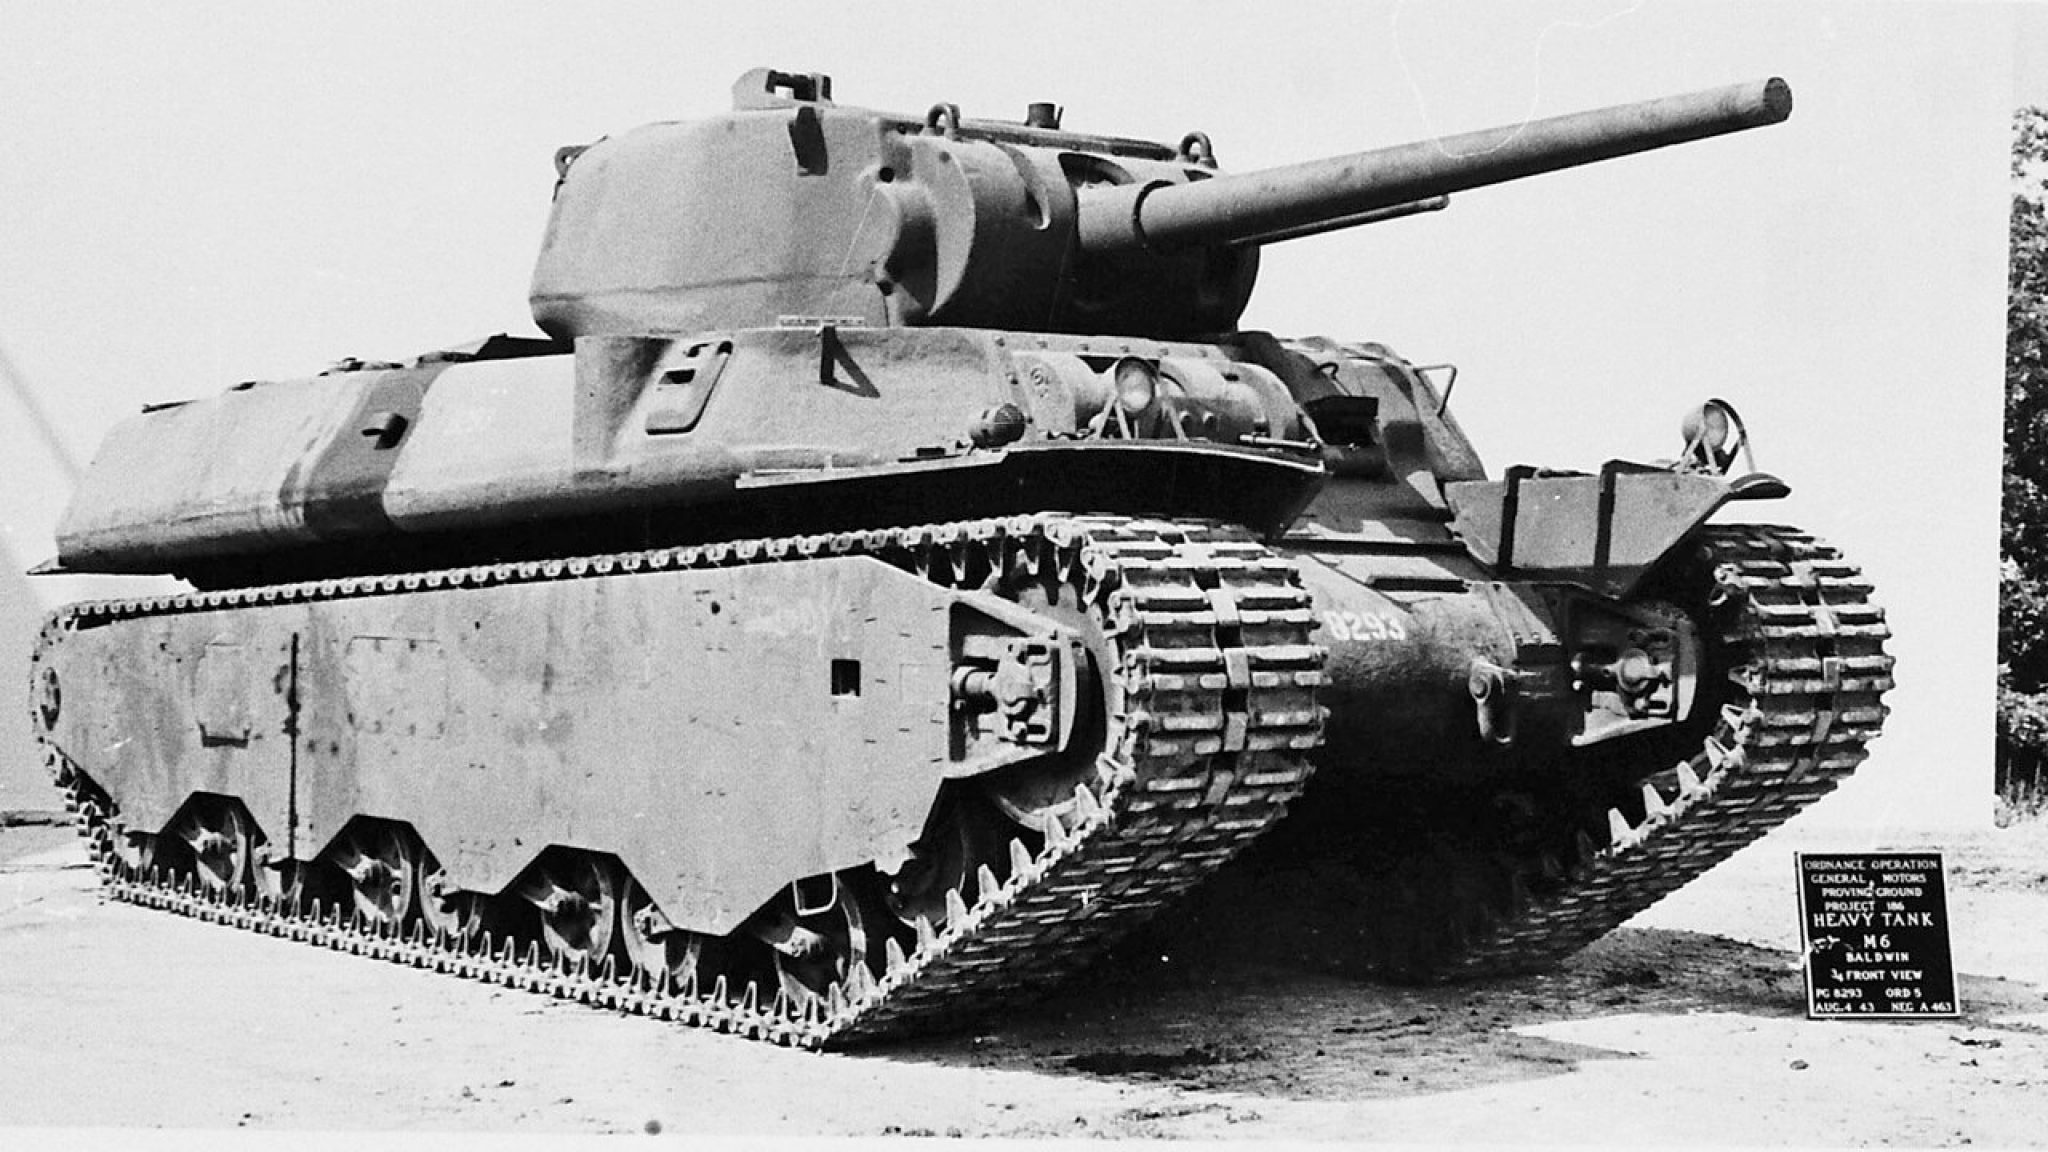 Первый тяжелый танк. M6a1 Heavy Tank. Т1 танк США. M6 тяжёлый танк. Т1 хеви американский тяжелый танк второй мировой войны.